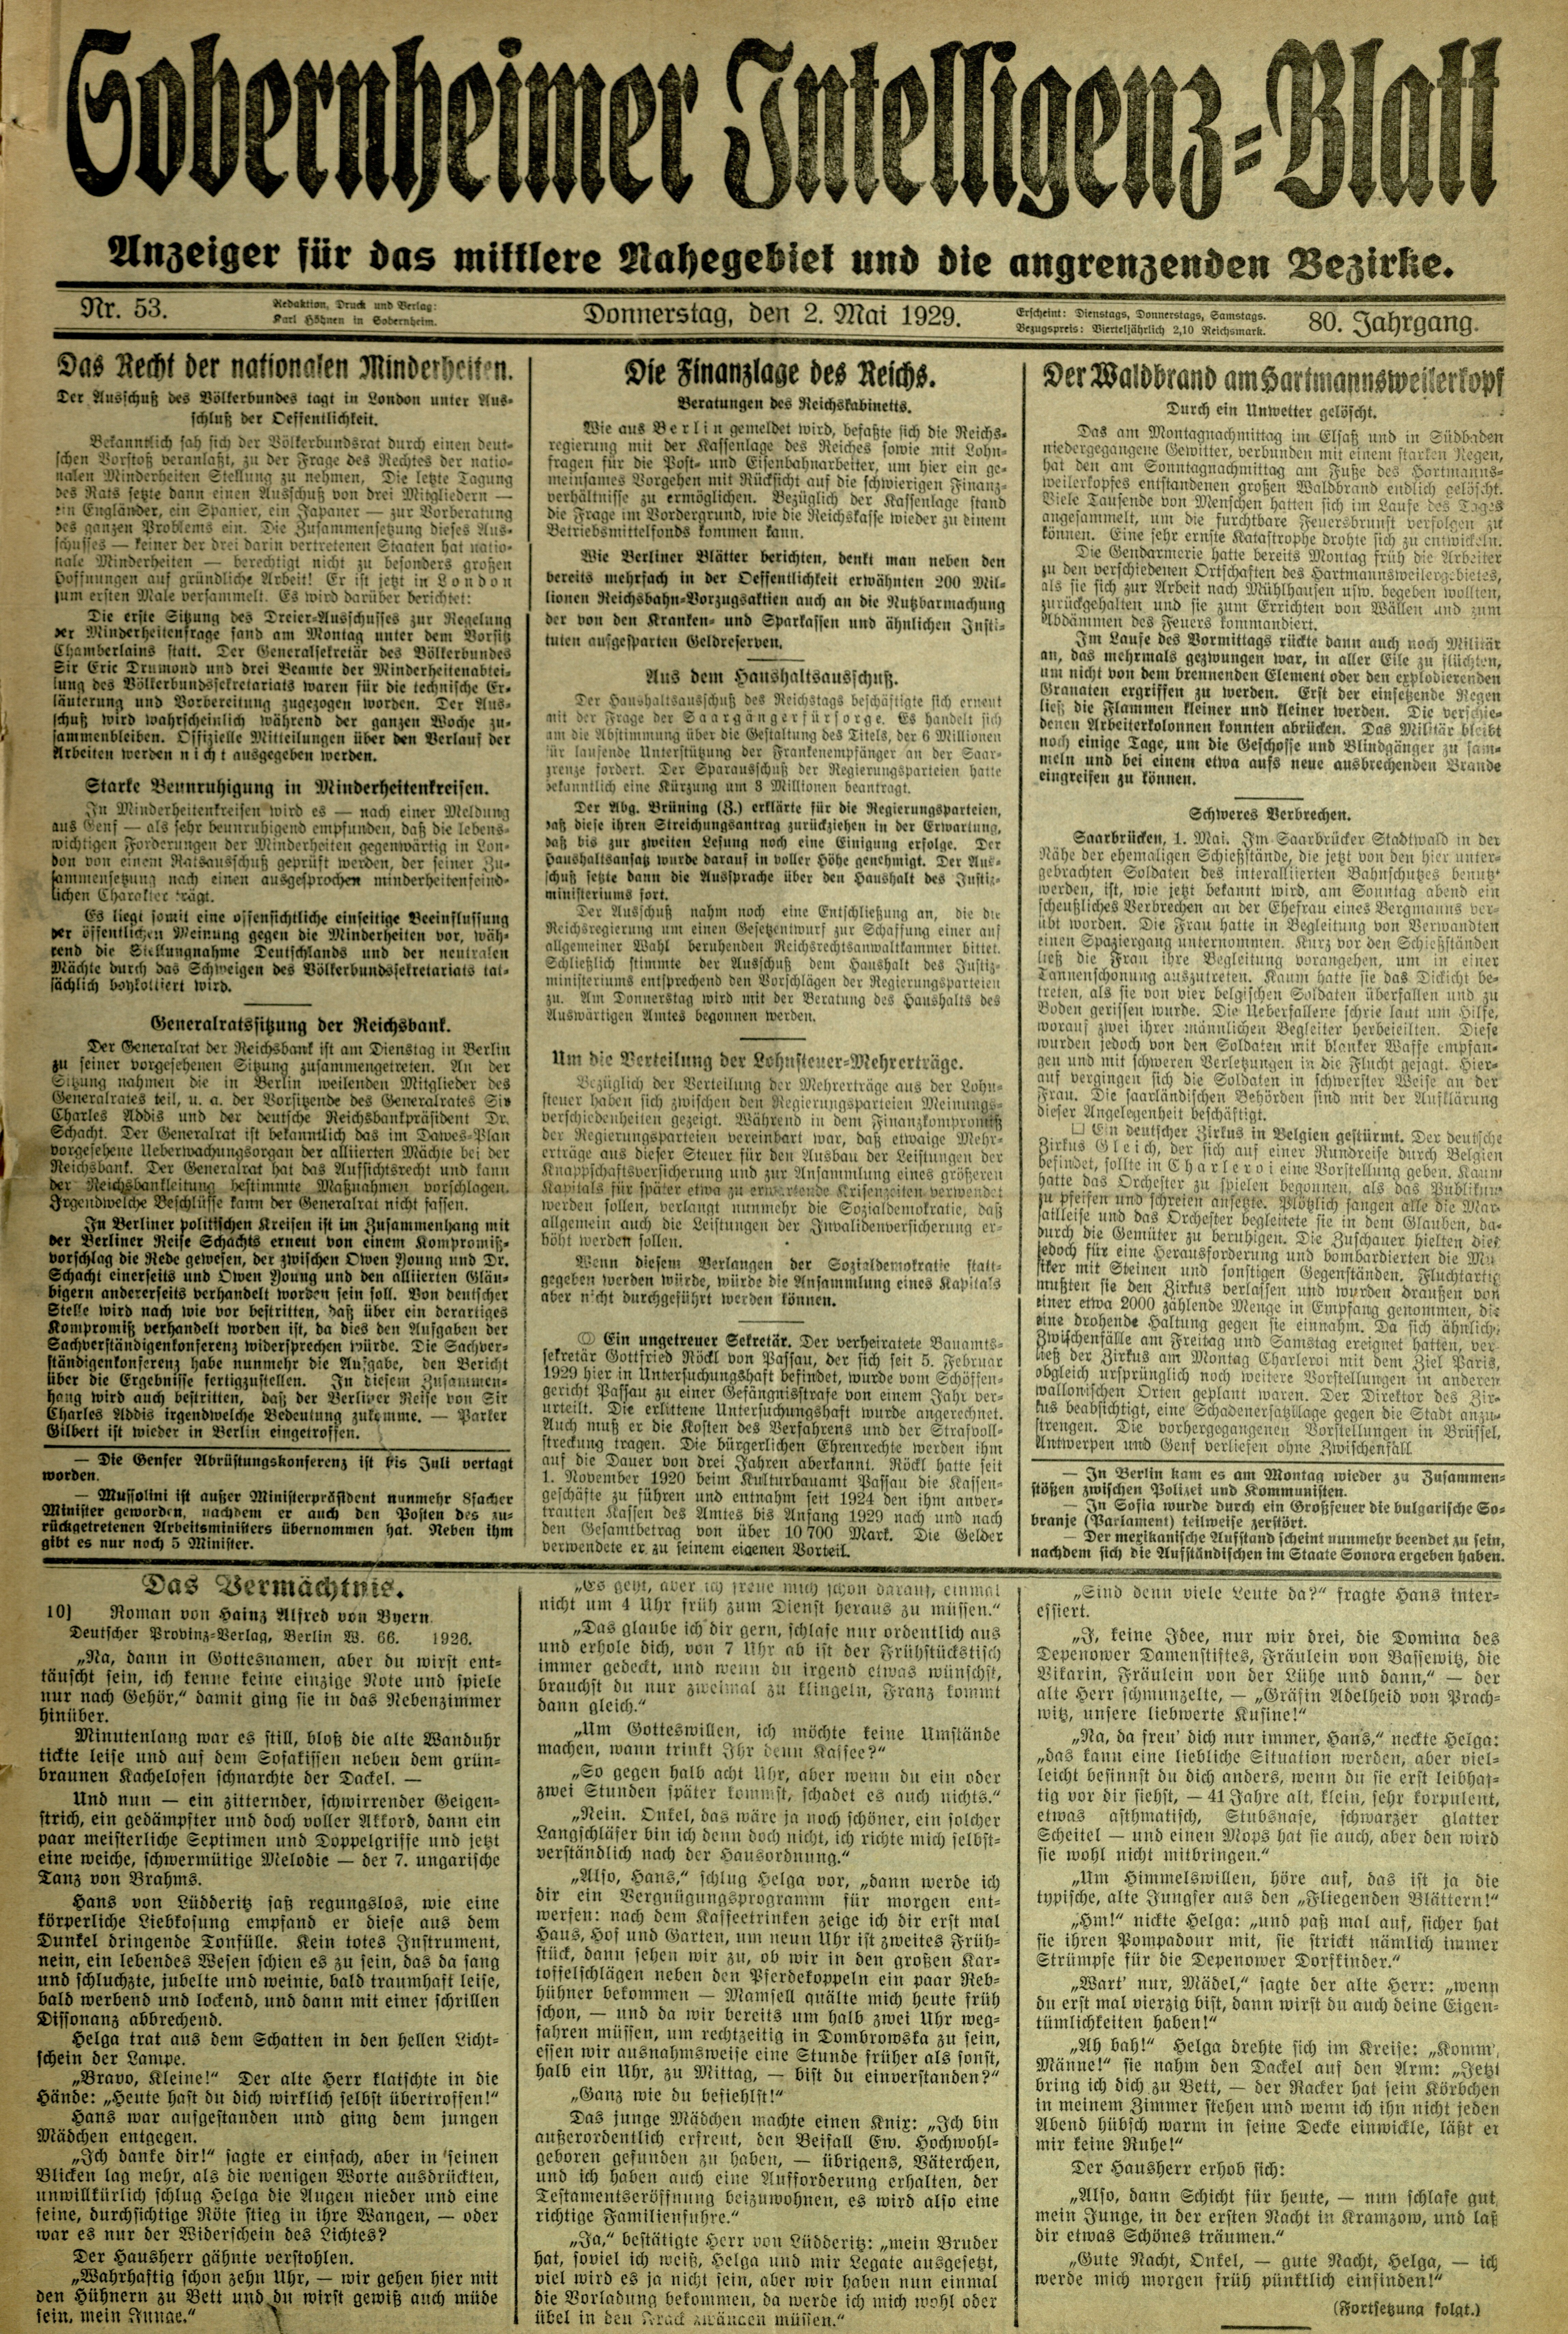 Zeitung: Sobernheimer Intelligenzblatt; Mai 1929, Jg. 80 Nr. 53 (Heimatmuseum Bad Sobernheim CC BY-NC-SA)